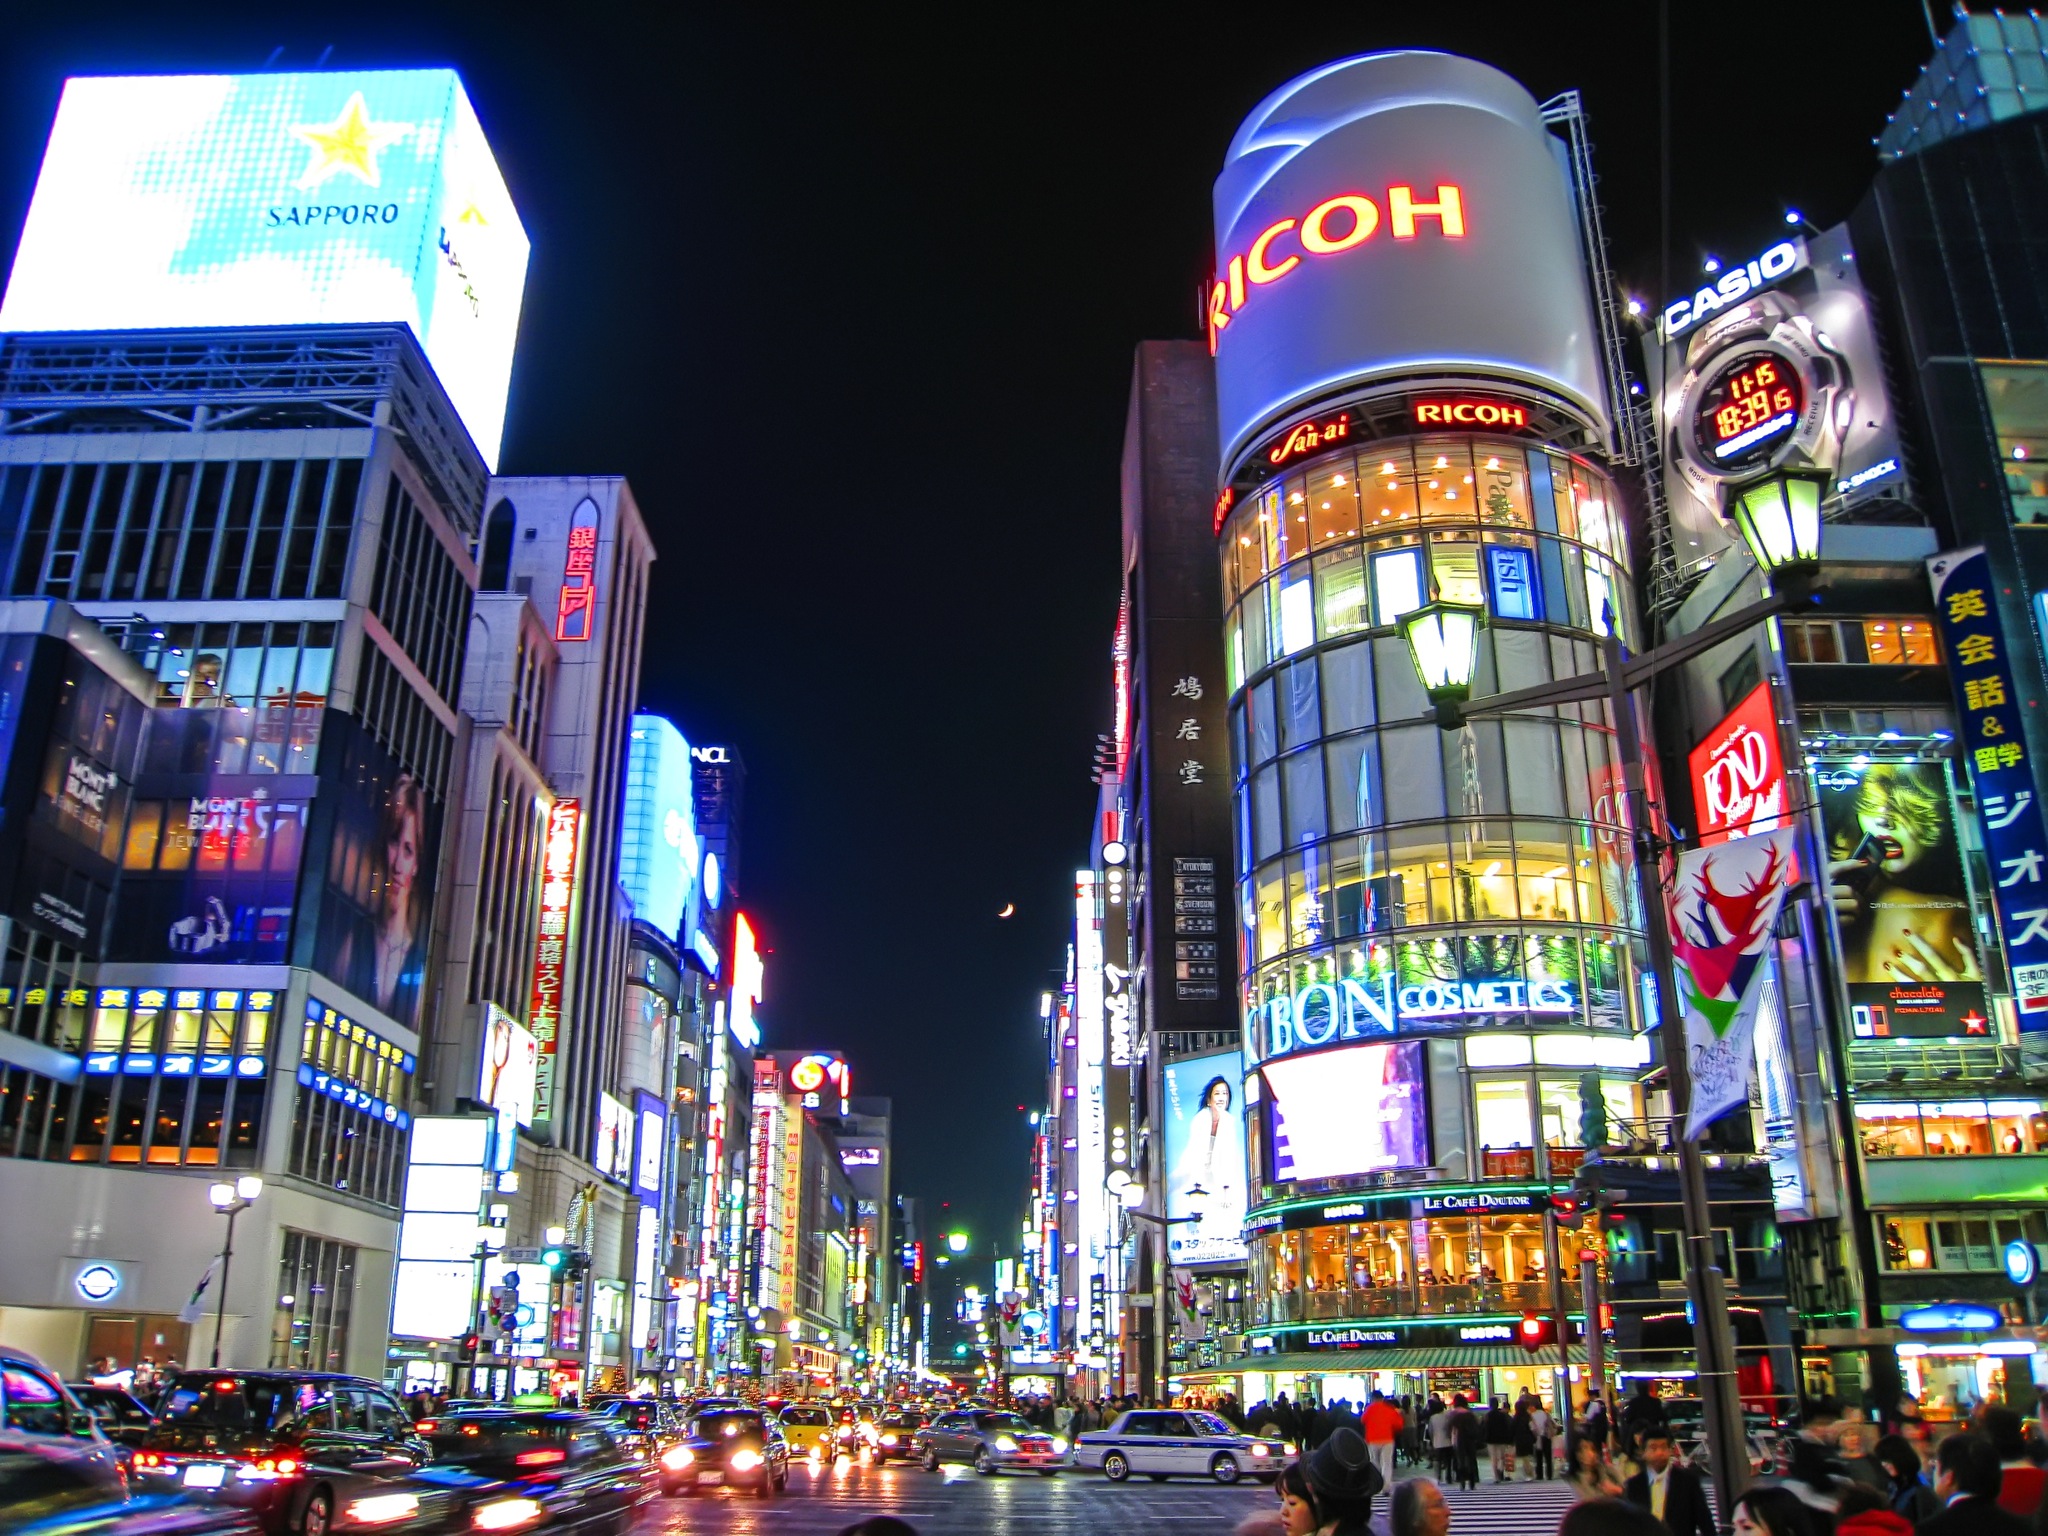 Du Lịch Tokyo Giá Rẻ: Khám Phá Những Điểm Đến 0đ